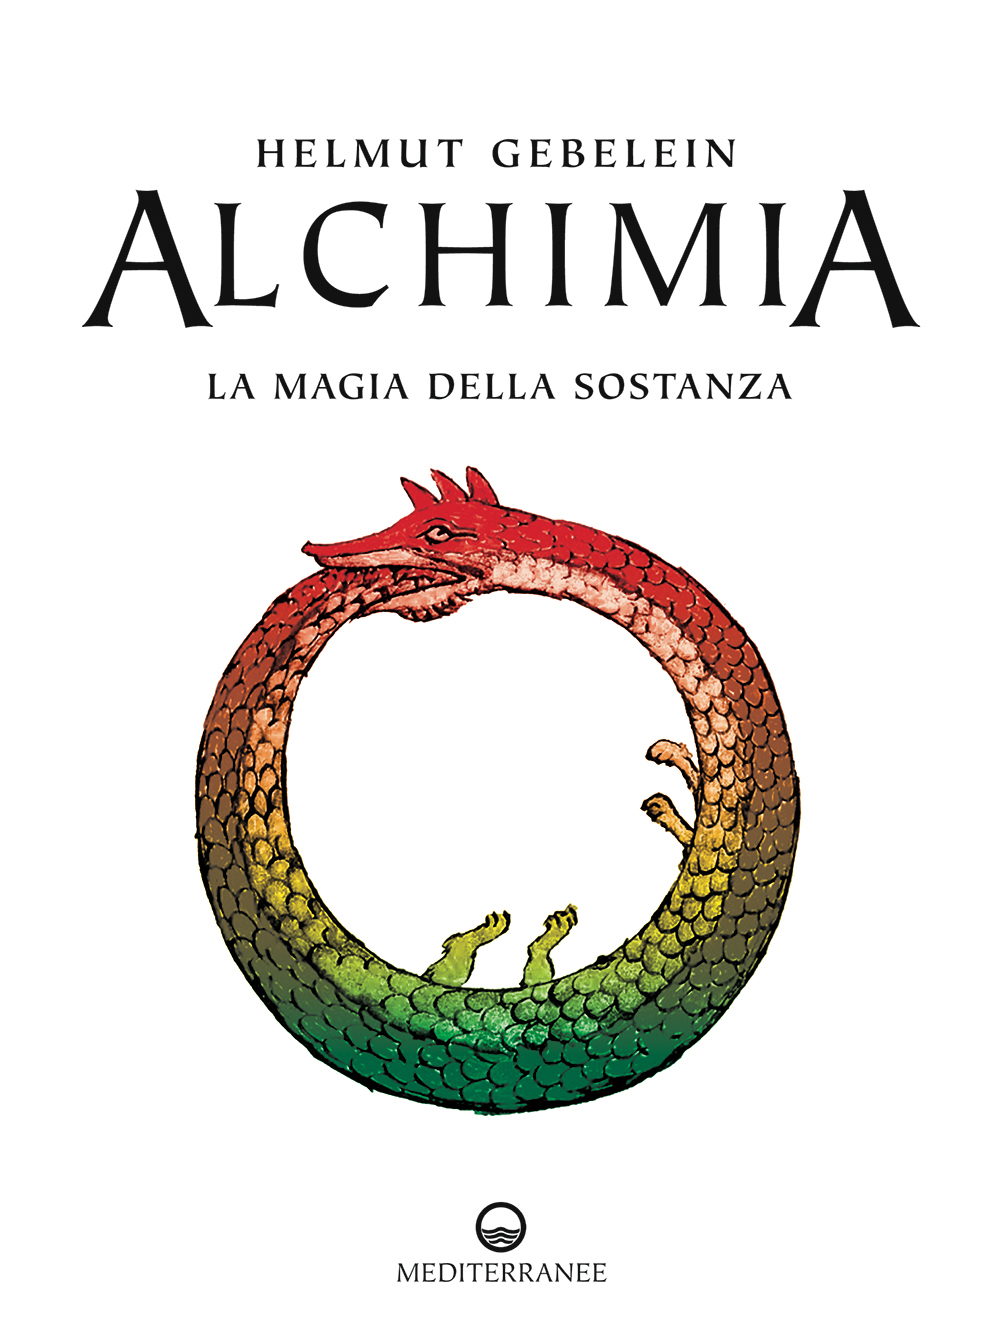 Libri Helmut Gebelein - Alchimia. La Magia Della Sostanza NUOVO SIGILLATO, EDIZIONE DEL 10/07/2009 SUBITO DISPONIBILE